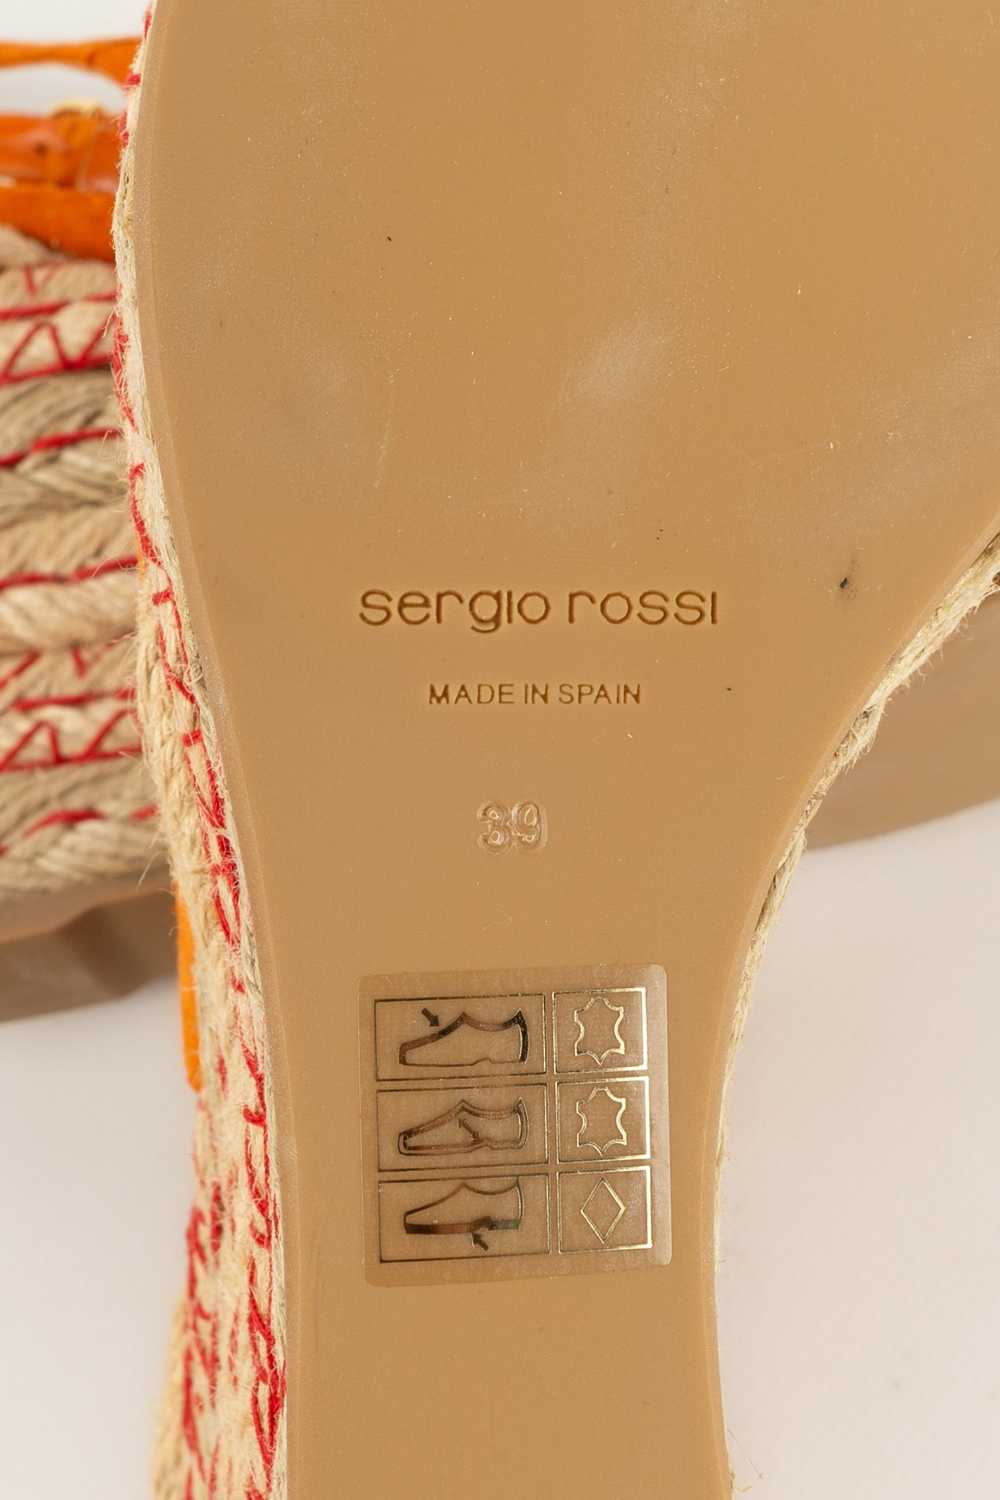 Sergio Rossi orange pumps - image 9